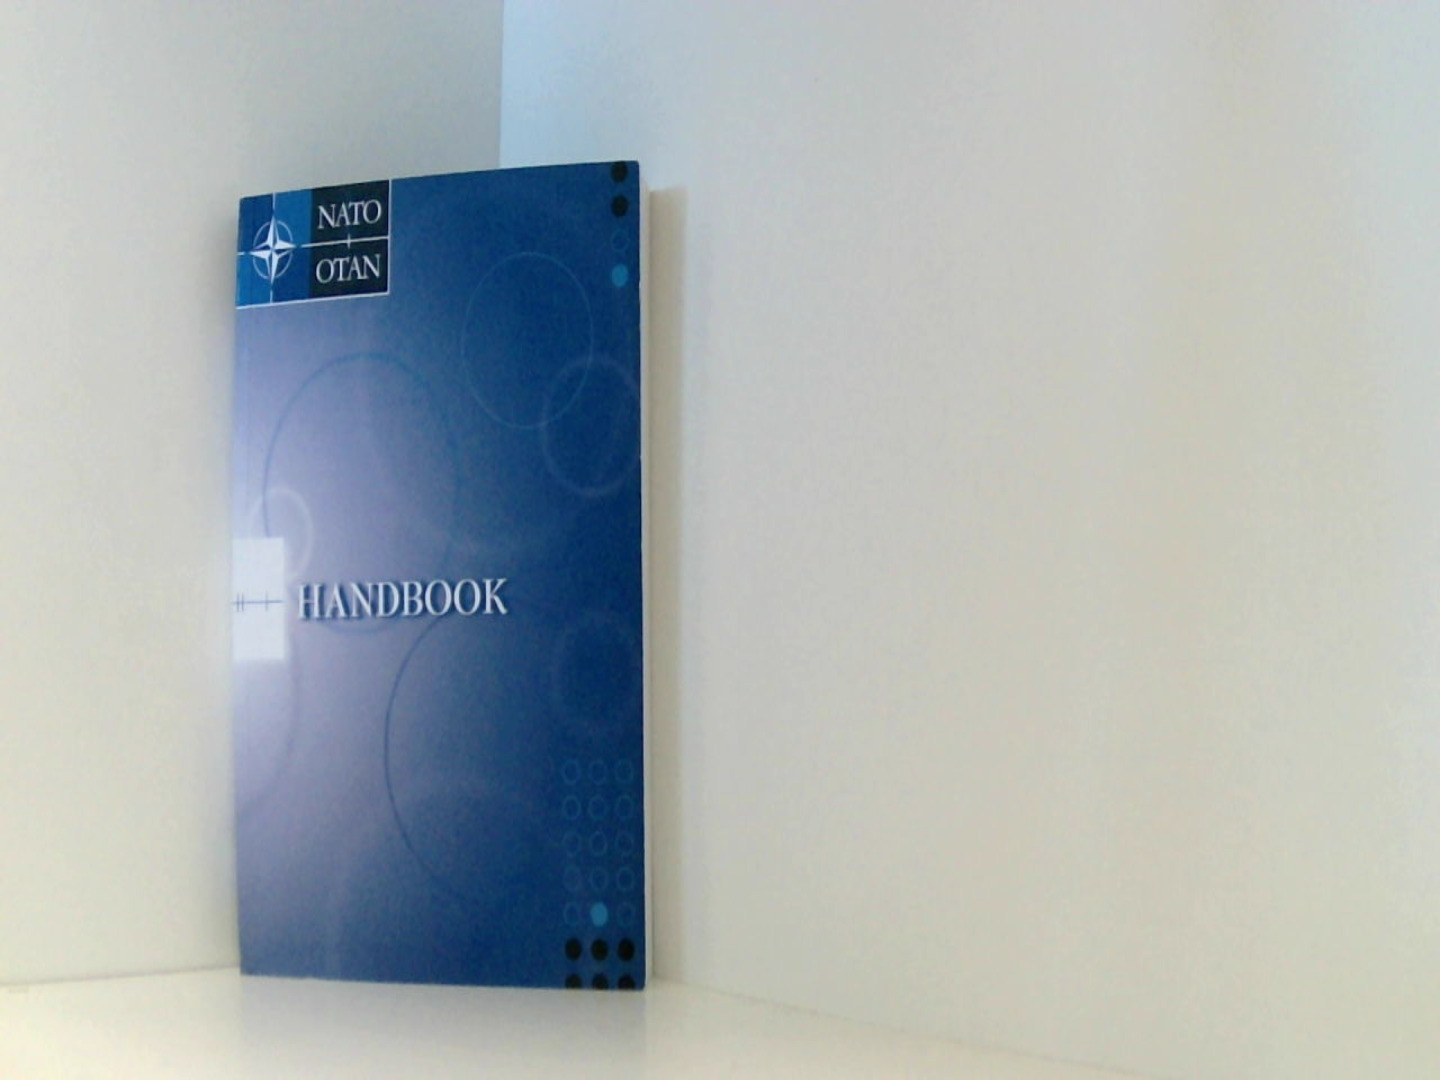 NATO Handbook - NATO und OTAN